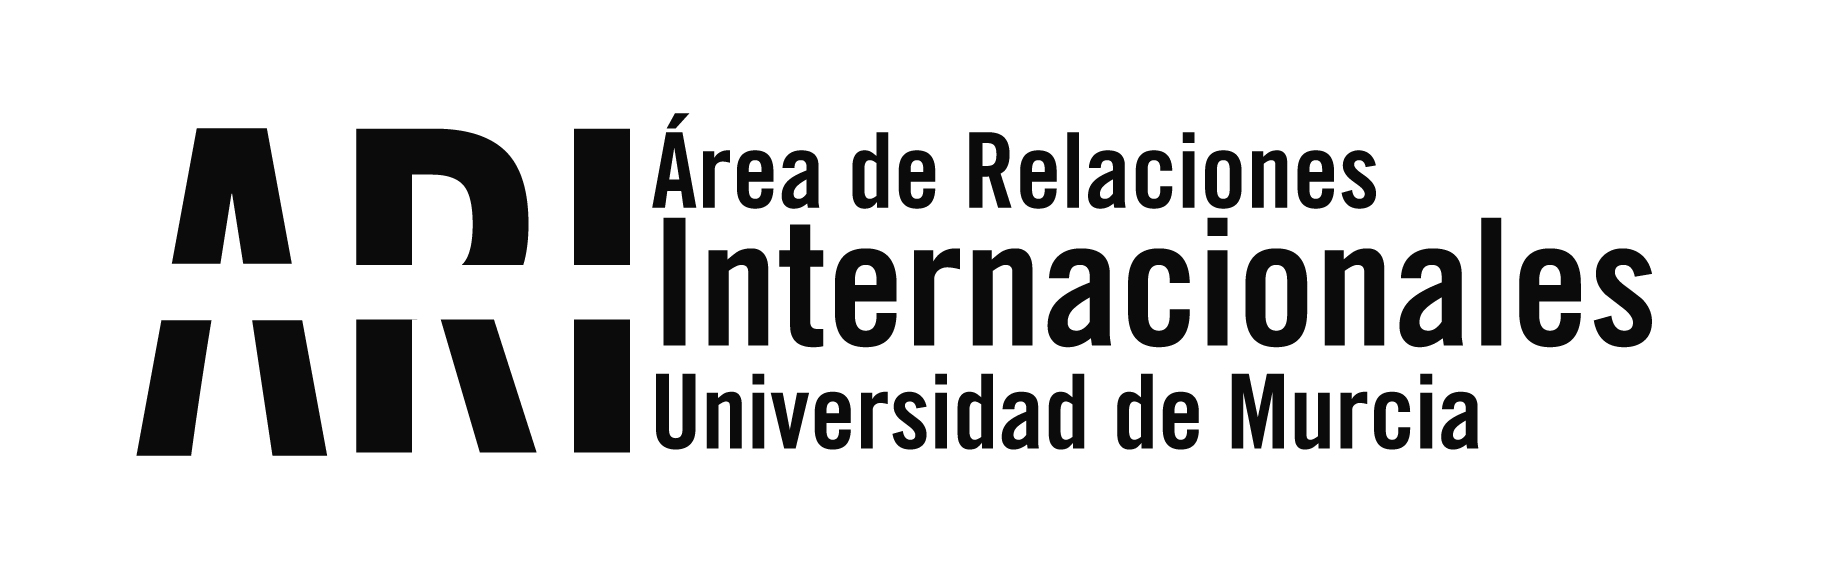 JIU 2020 - Área de Relaciones Internacionales